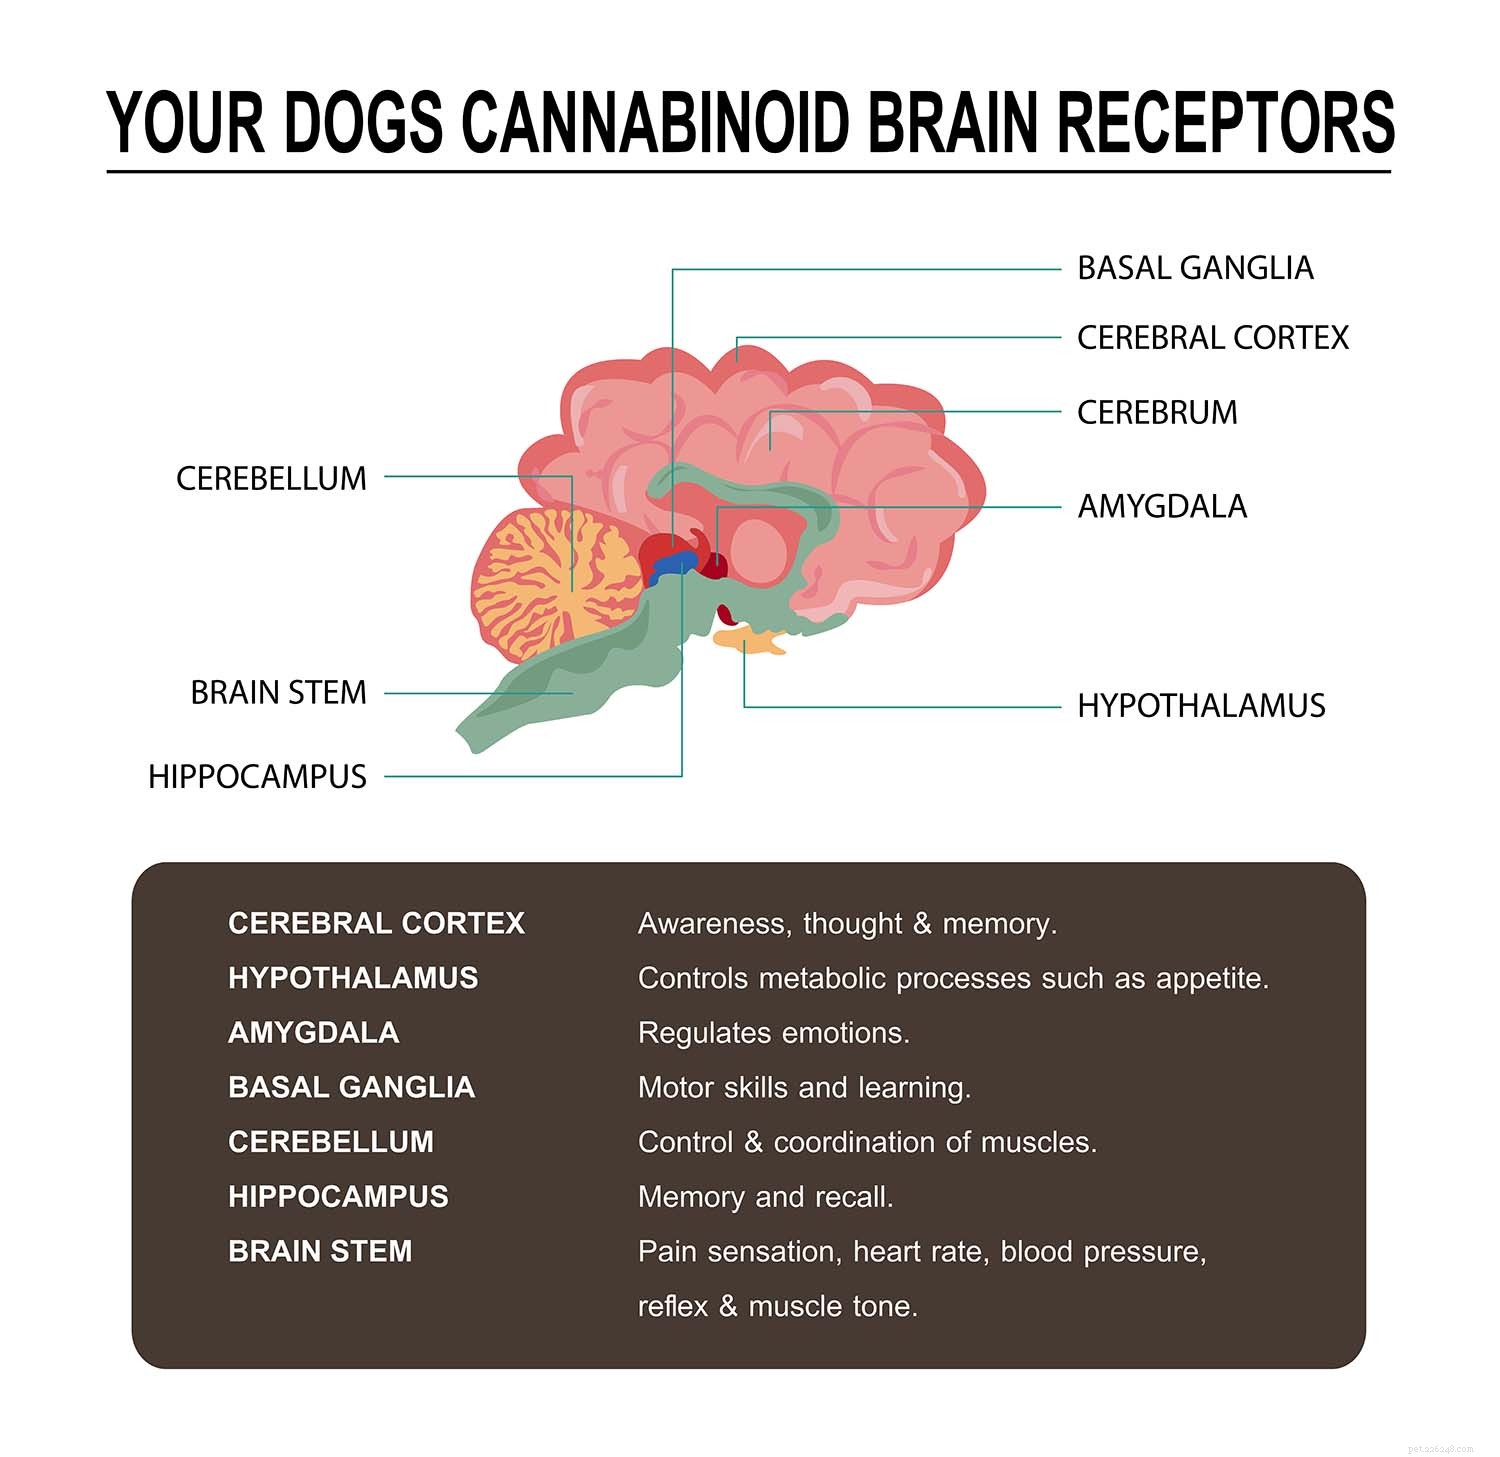 Dosage approprié de CBD pour les chiens